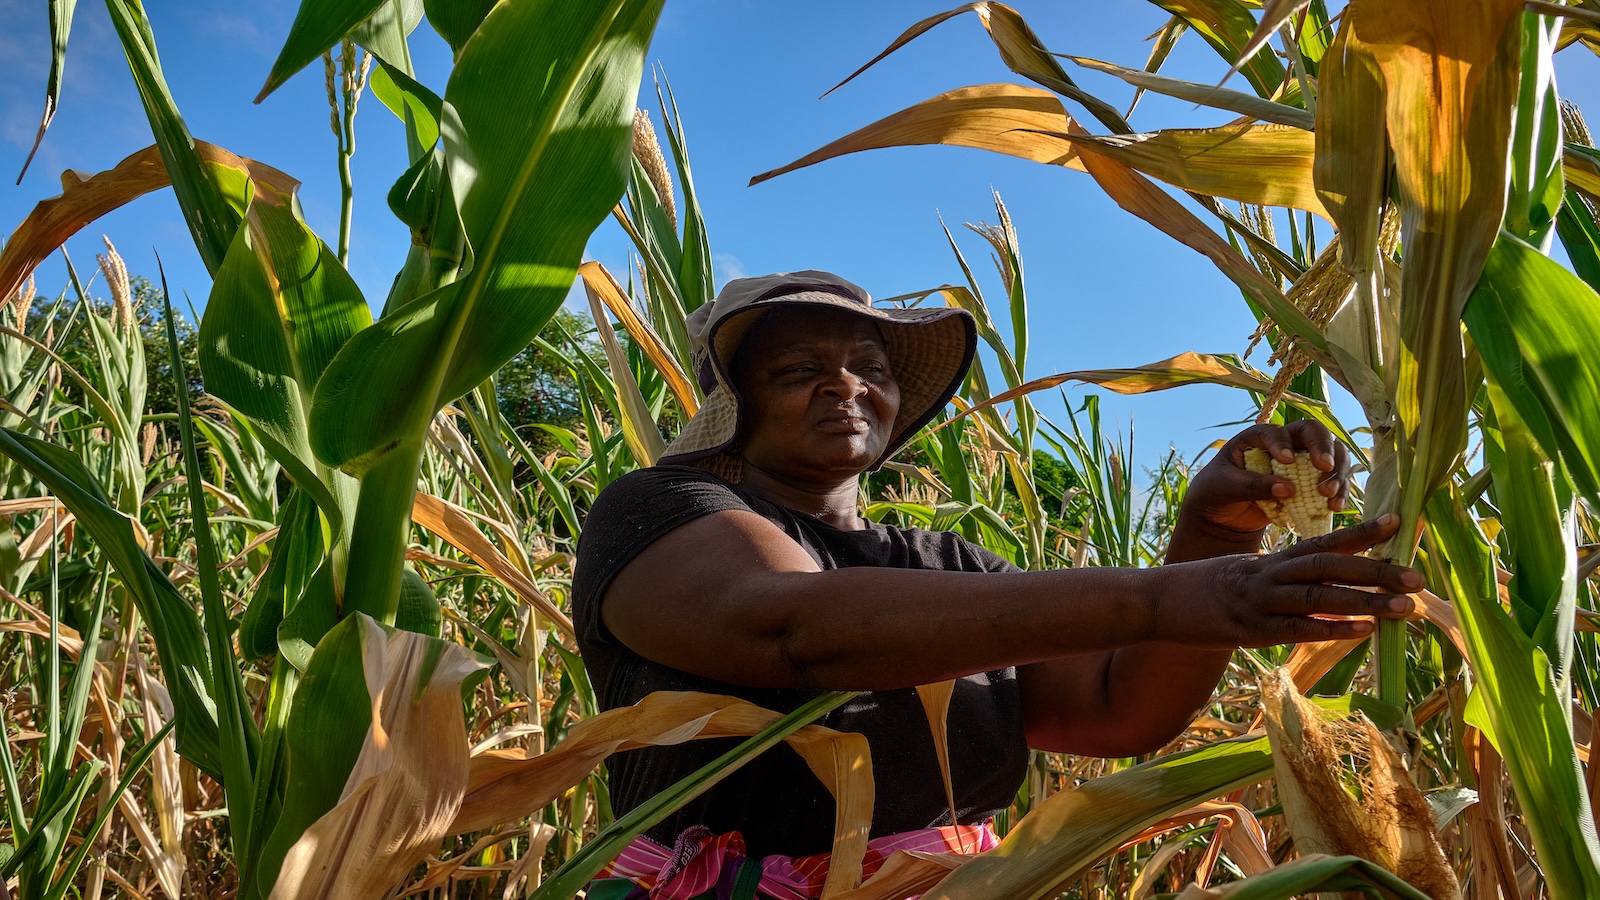 A woman farmer in Zimbabwe in a field of wilting crops